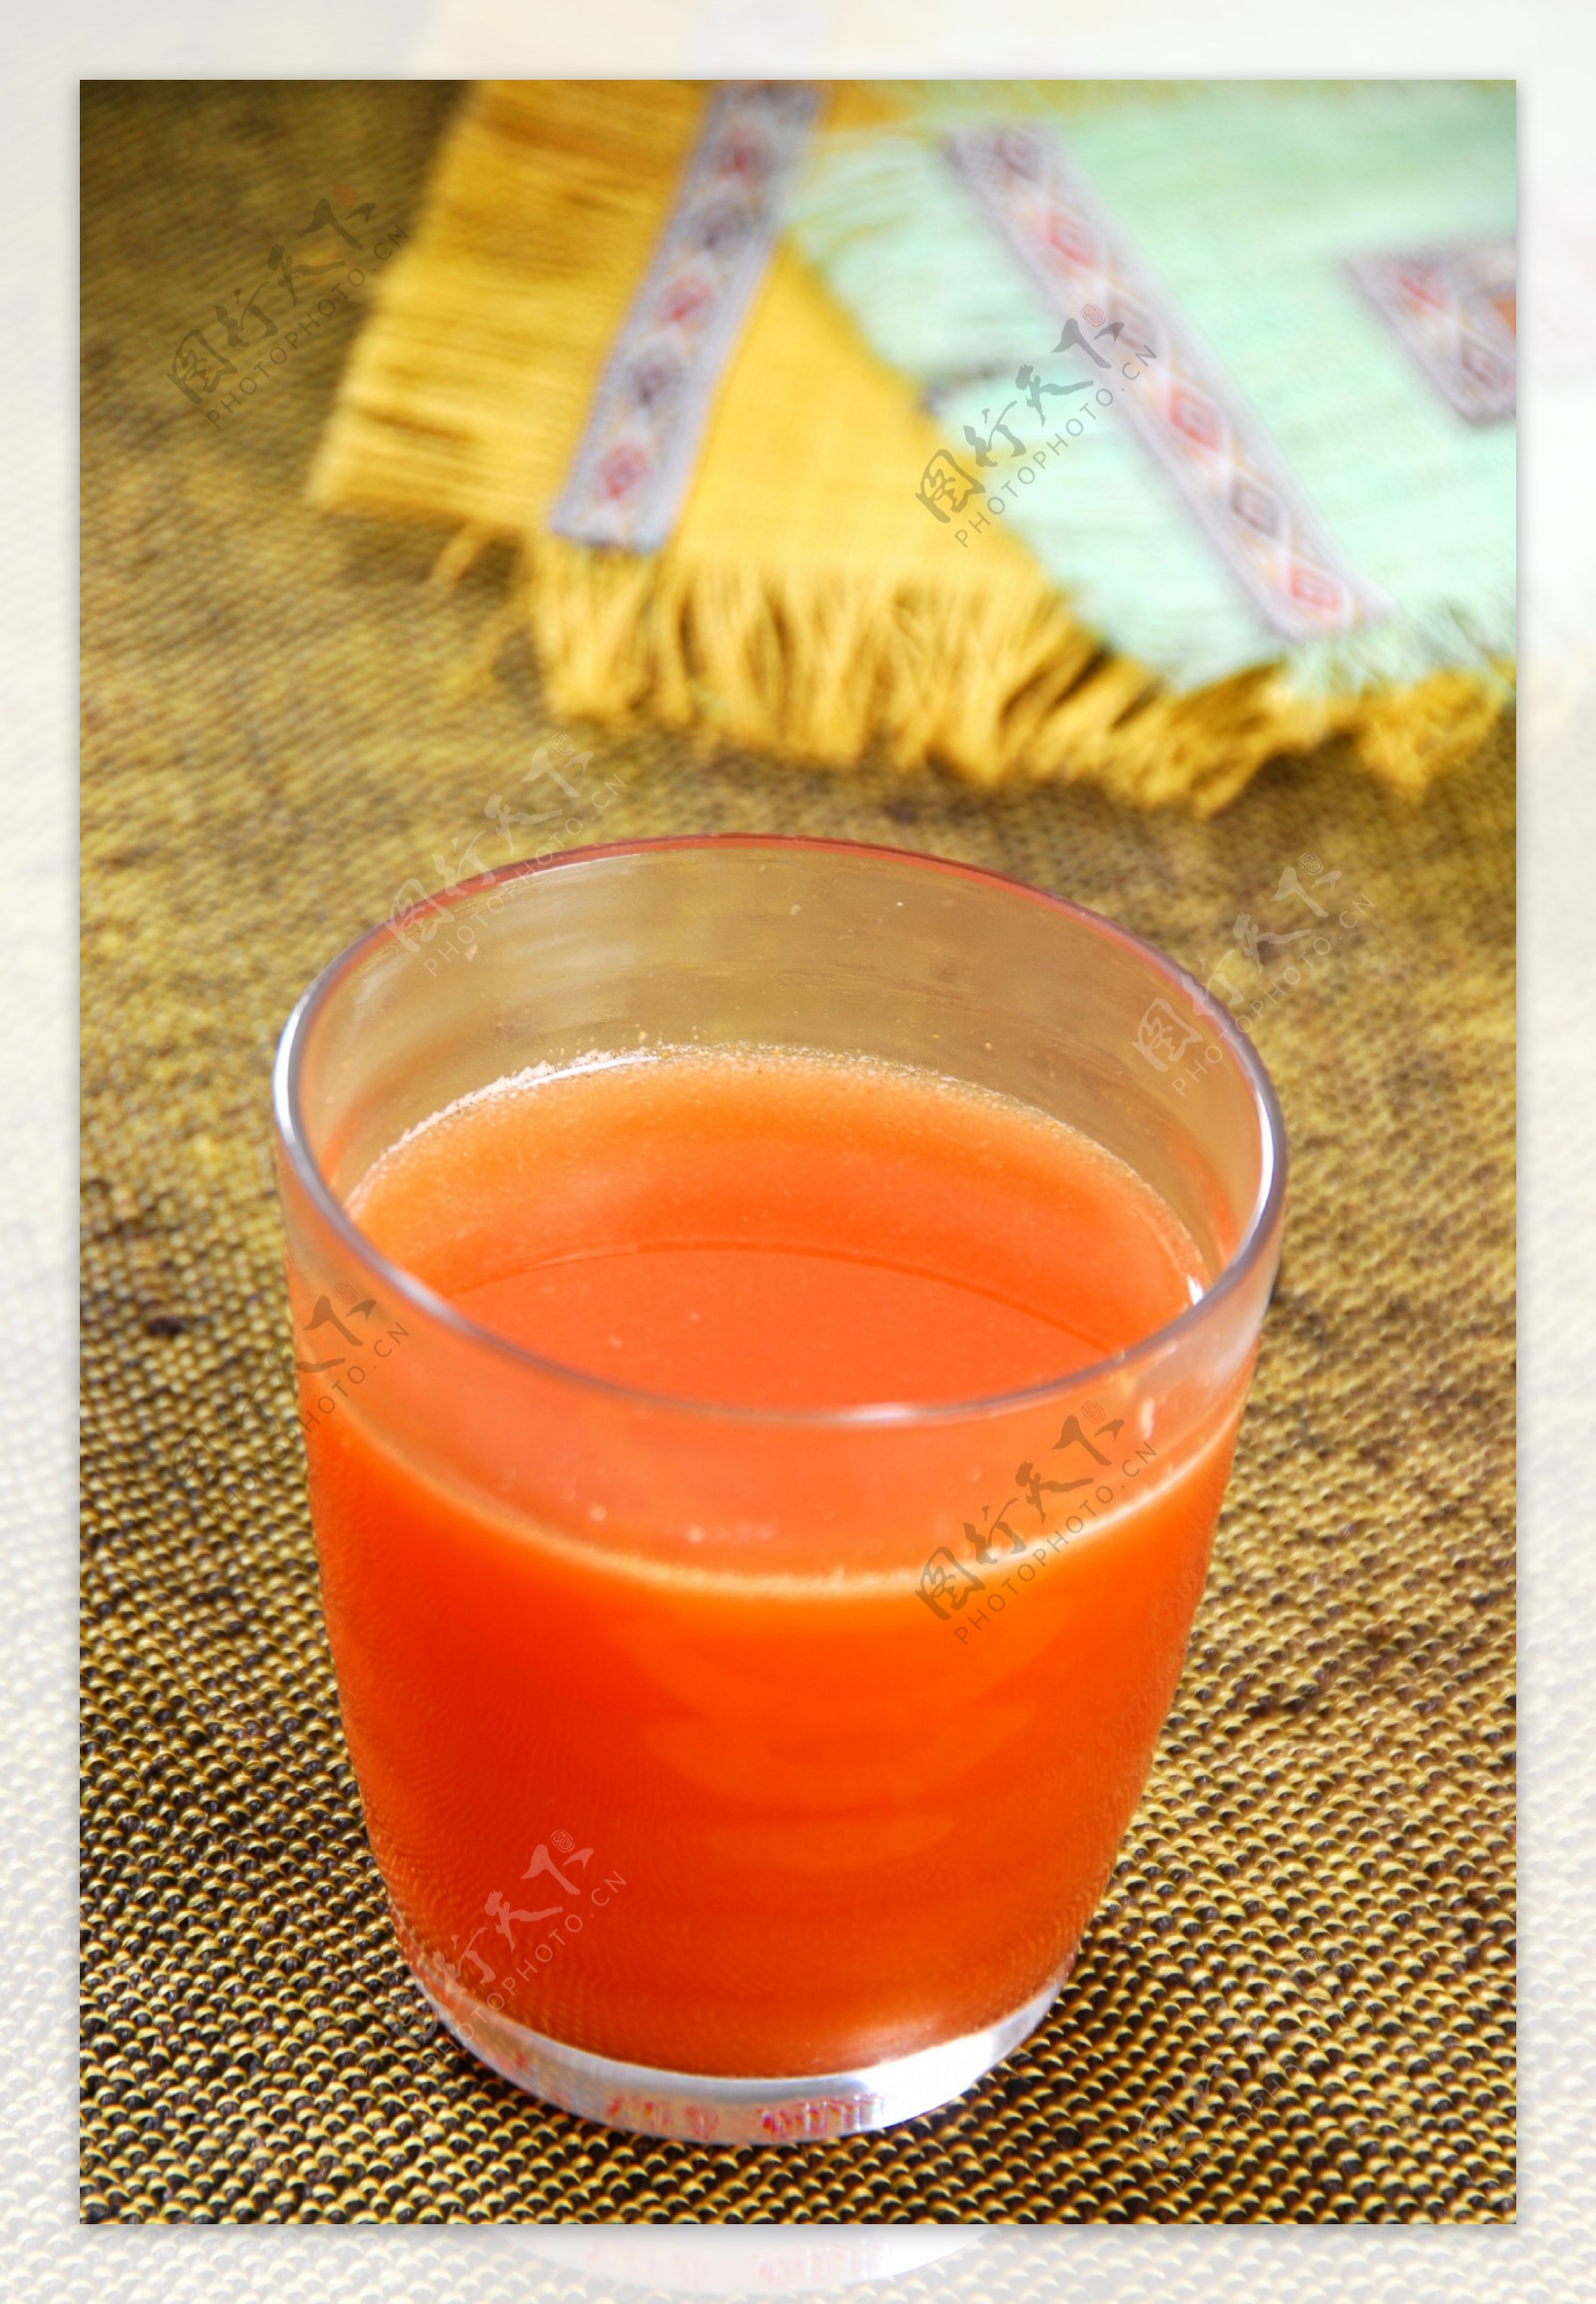 杯胡萝卜汁和新鲜胡萝卜放在一块木板图片下载 - 觅知网